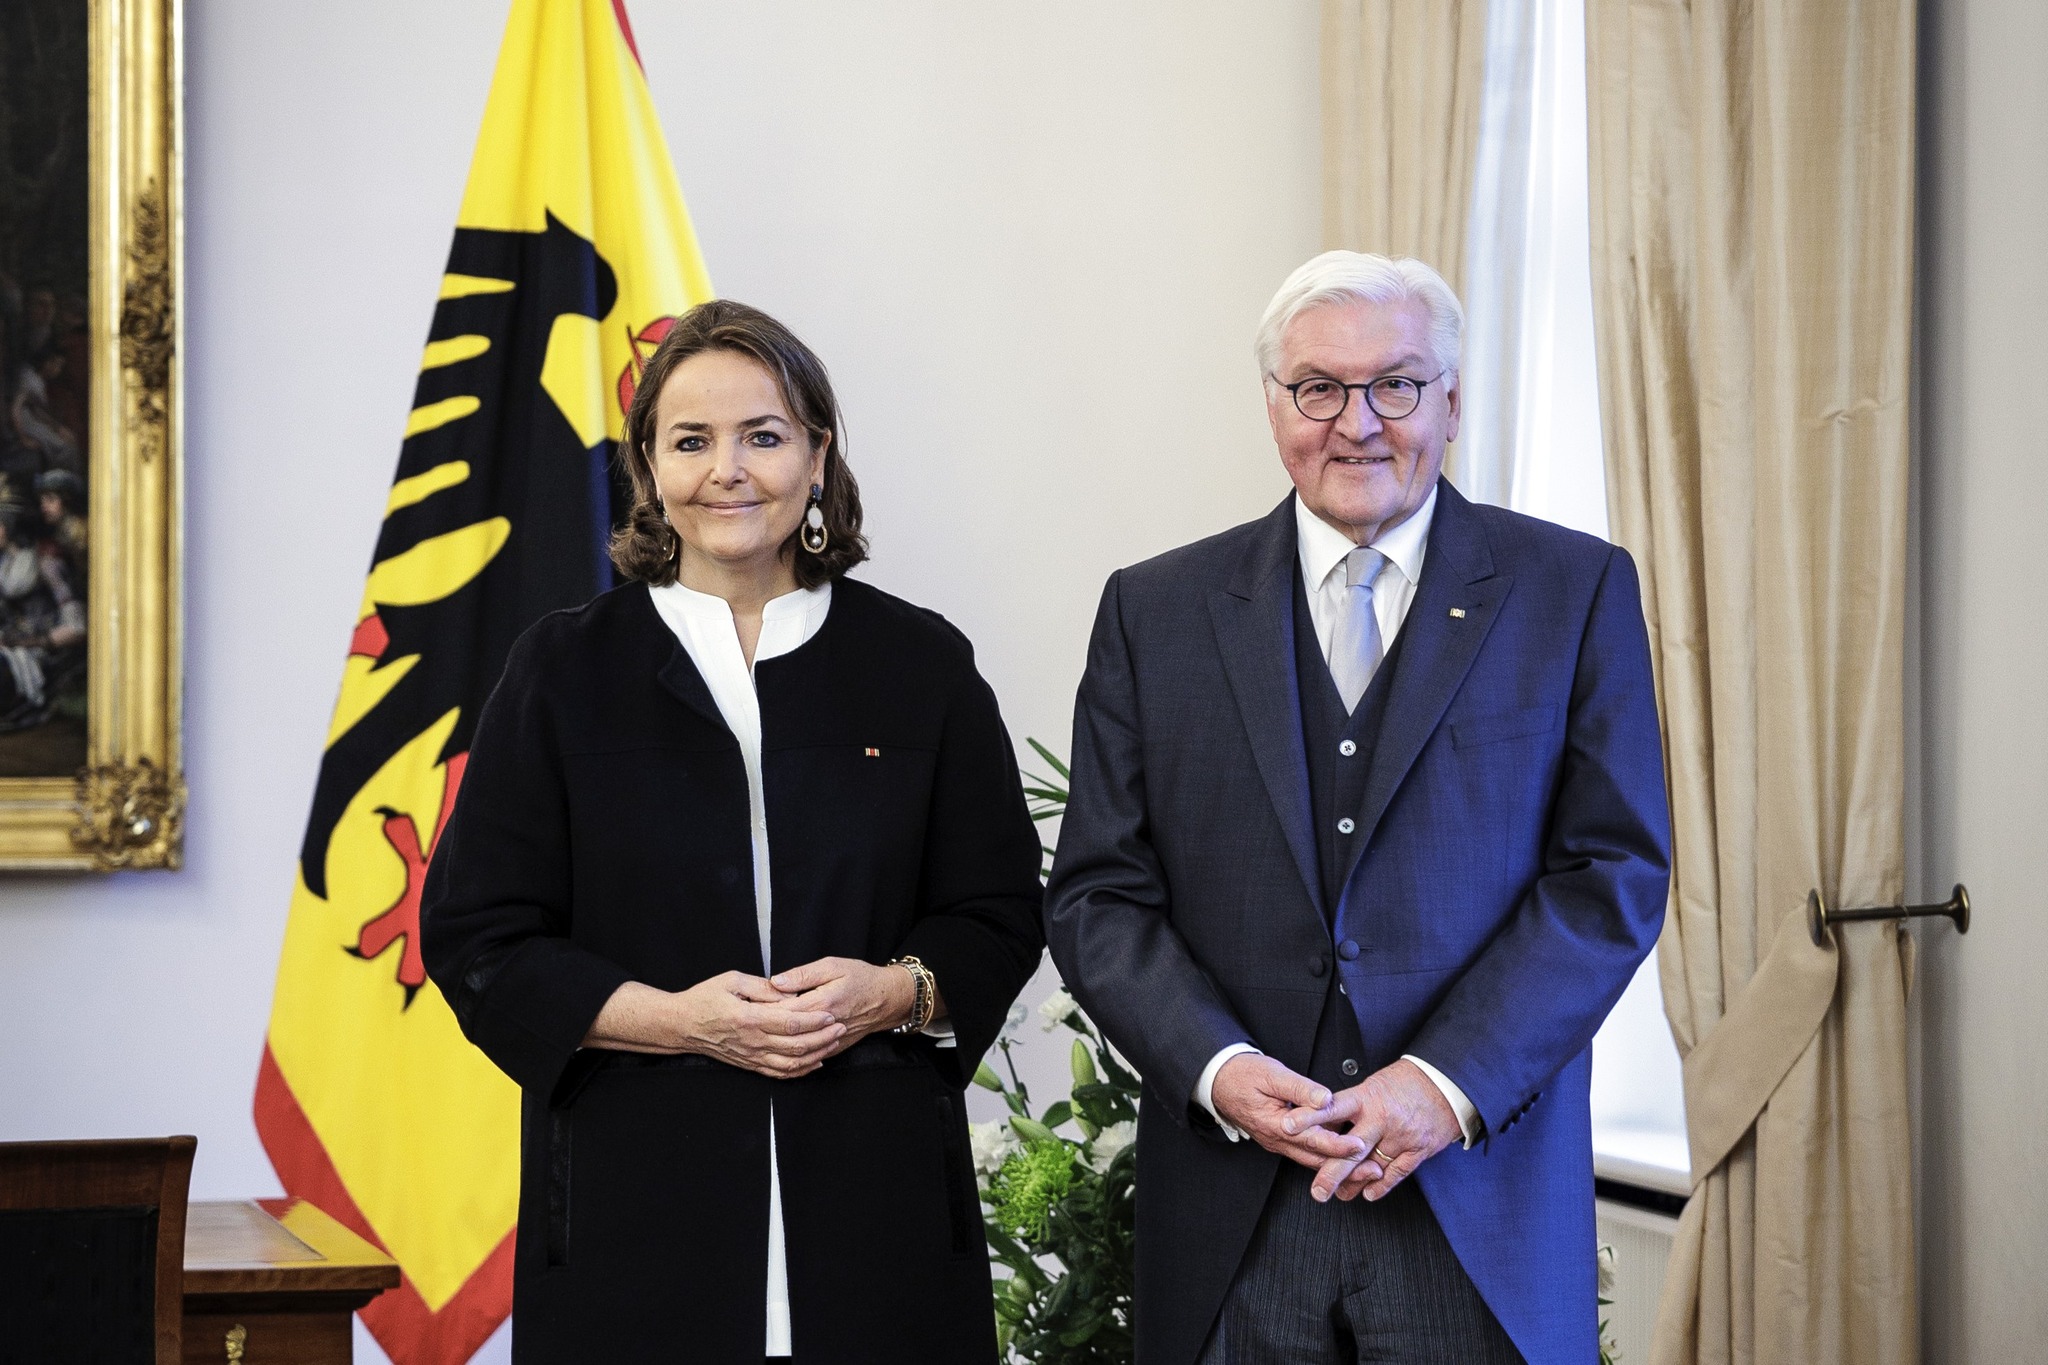 La nouvelle Ambassadrice de l’Ordre souverain de Malte auprès de l’Allemagne a présenté ses lettres de créance